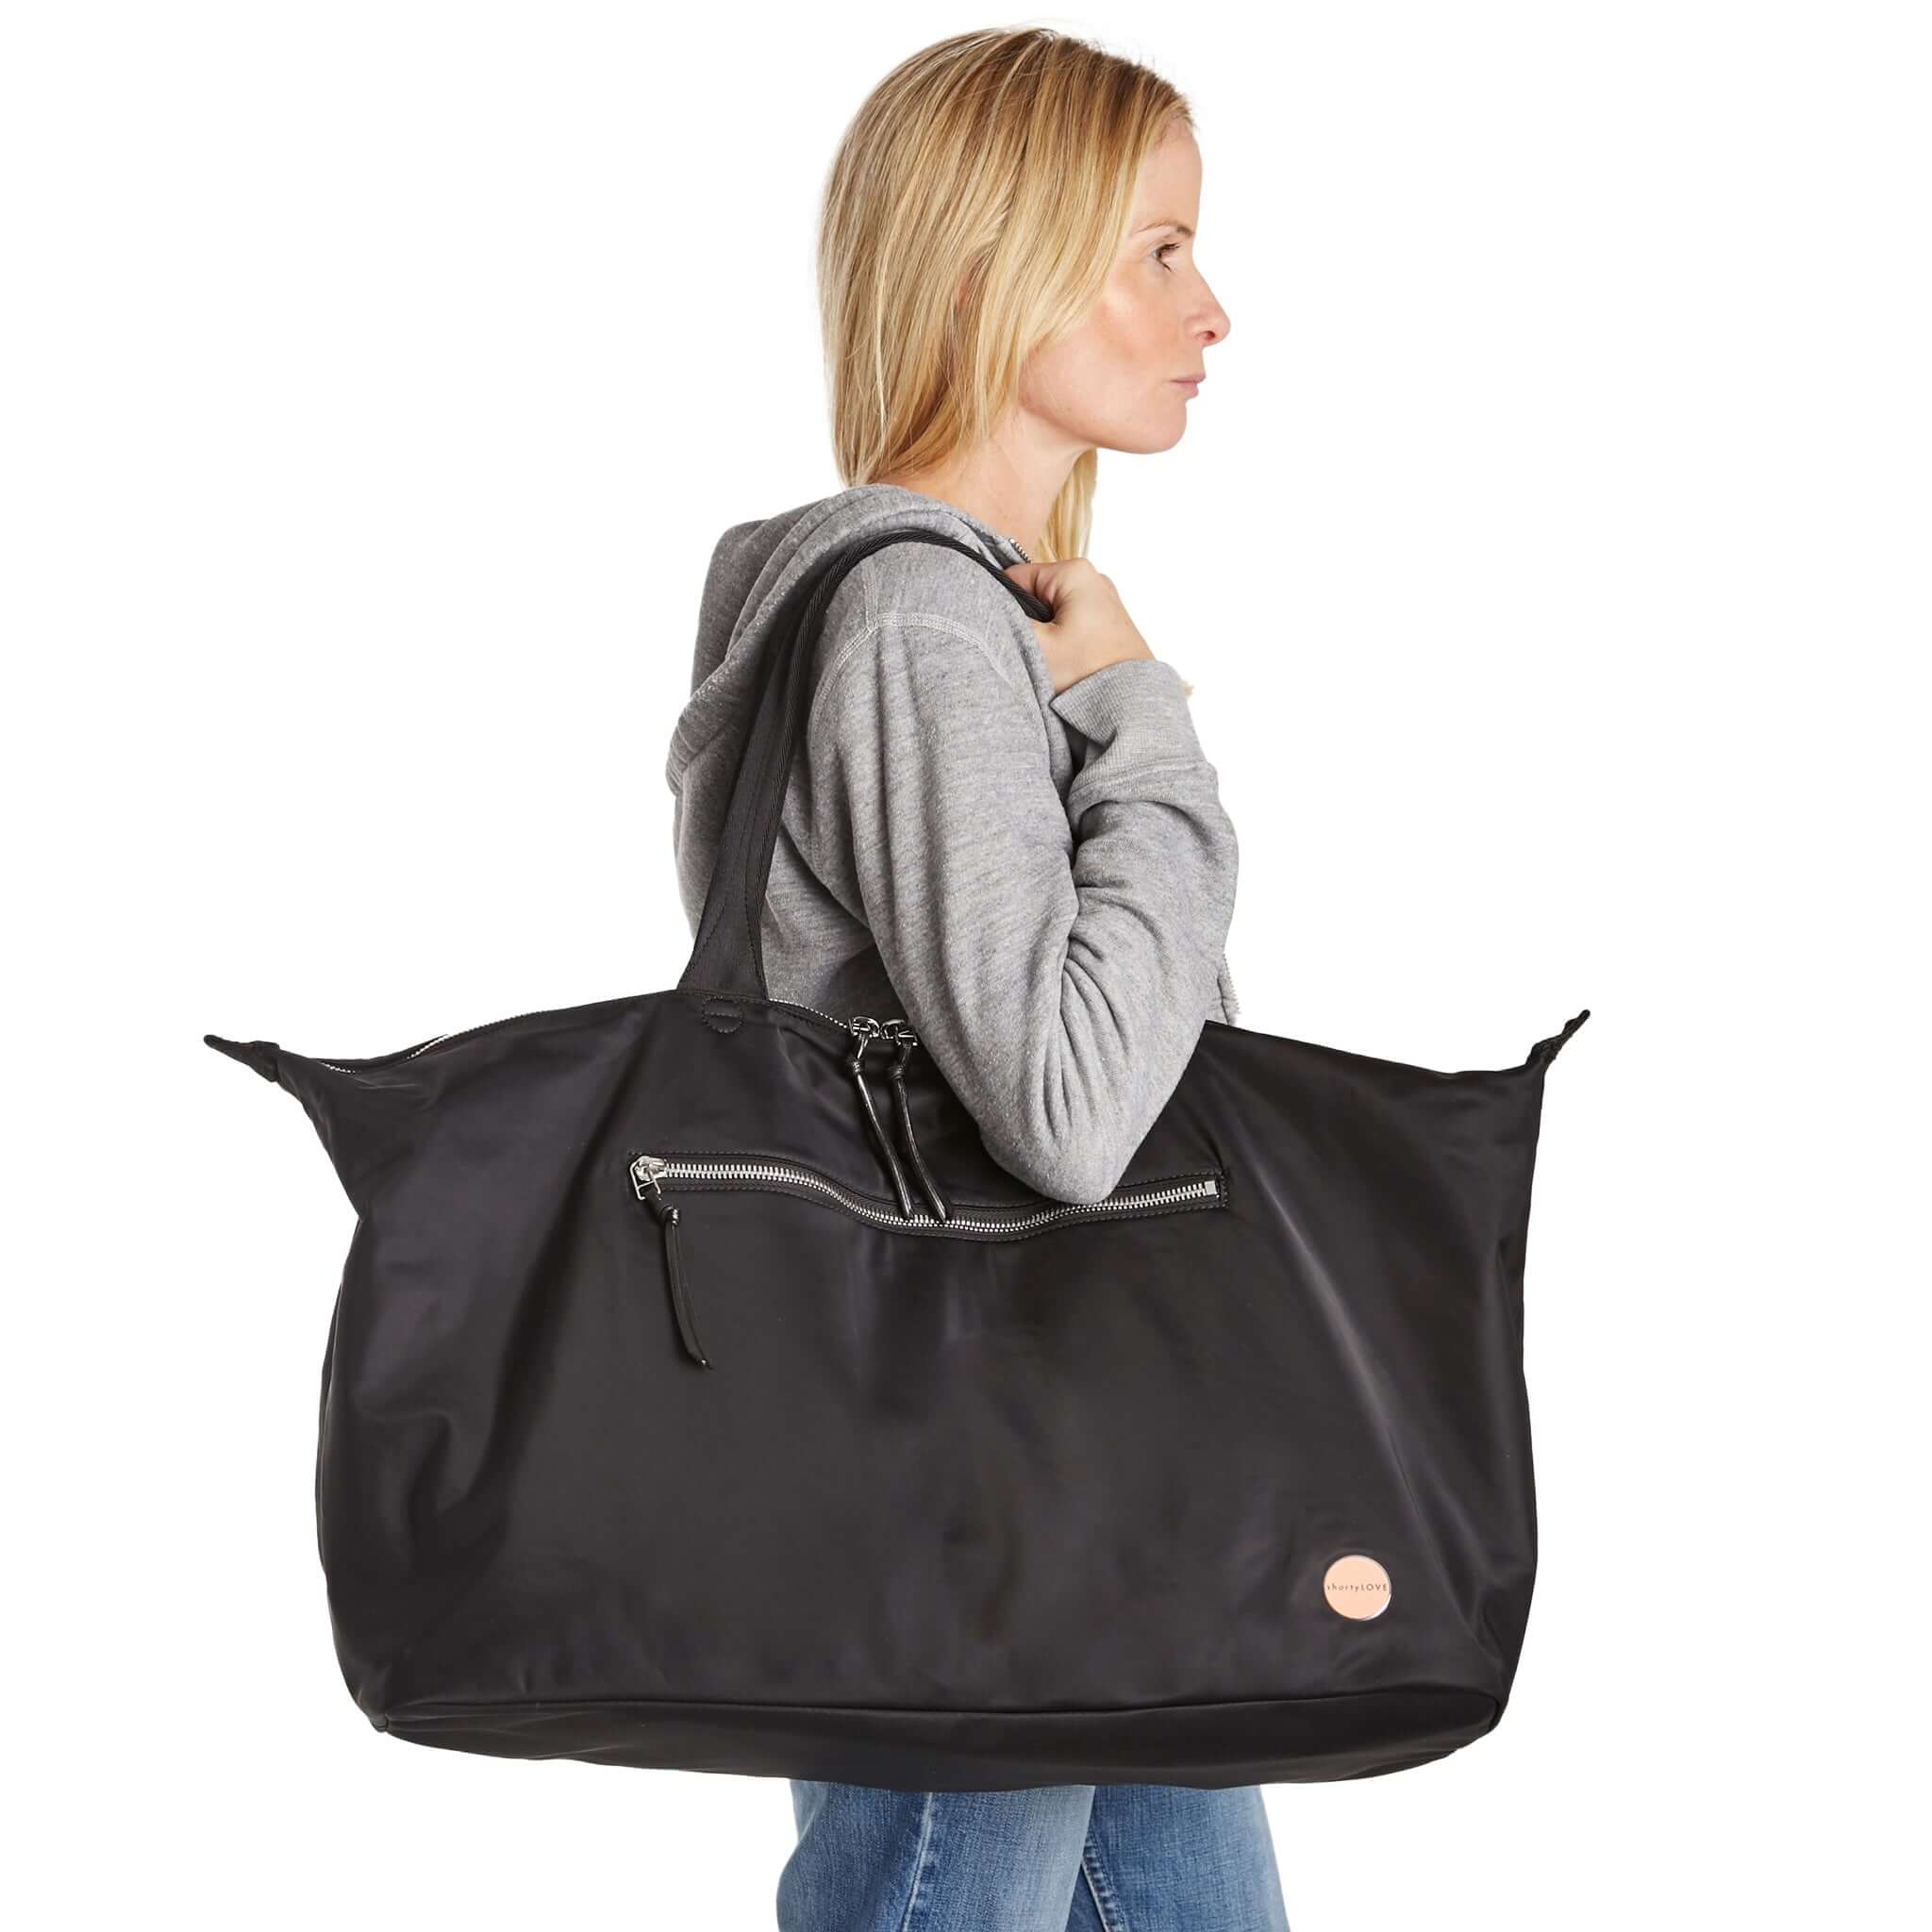 Travel Bags - Travel Bags & Travel Tote Bags for Women